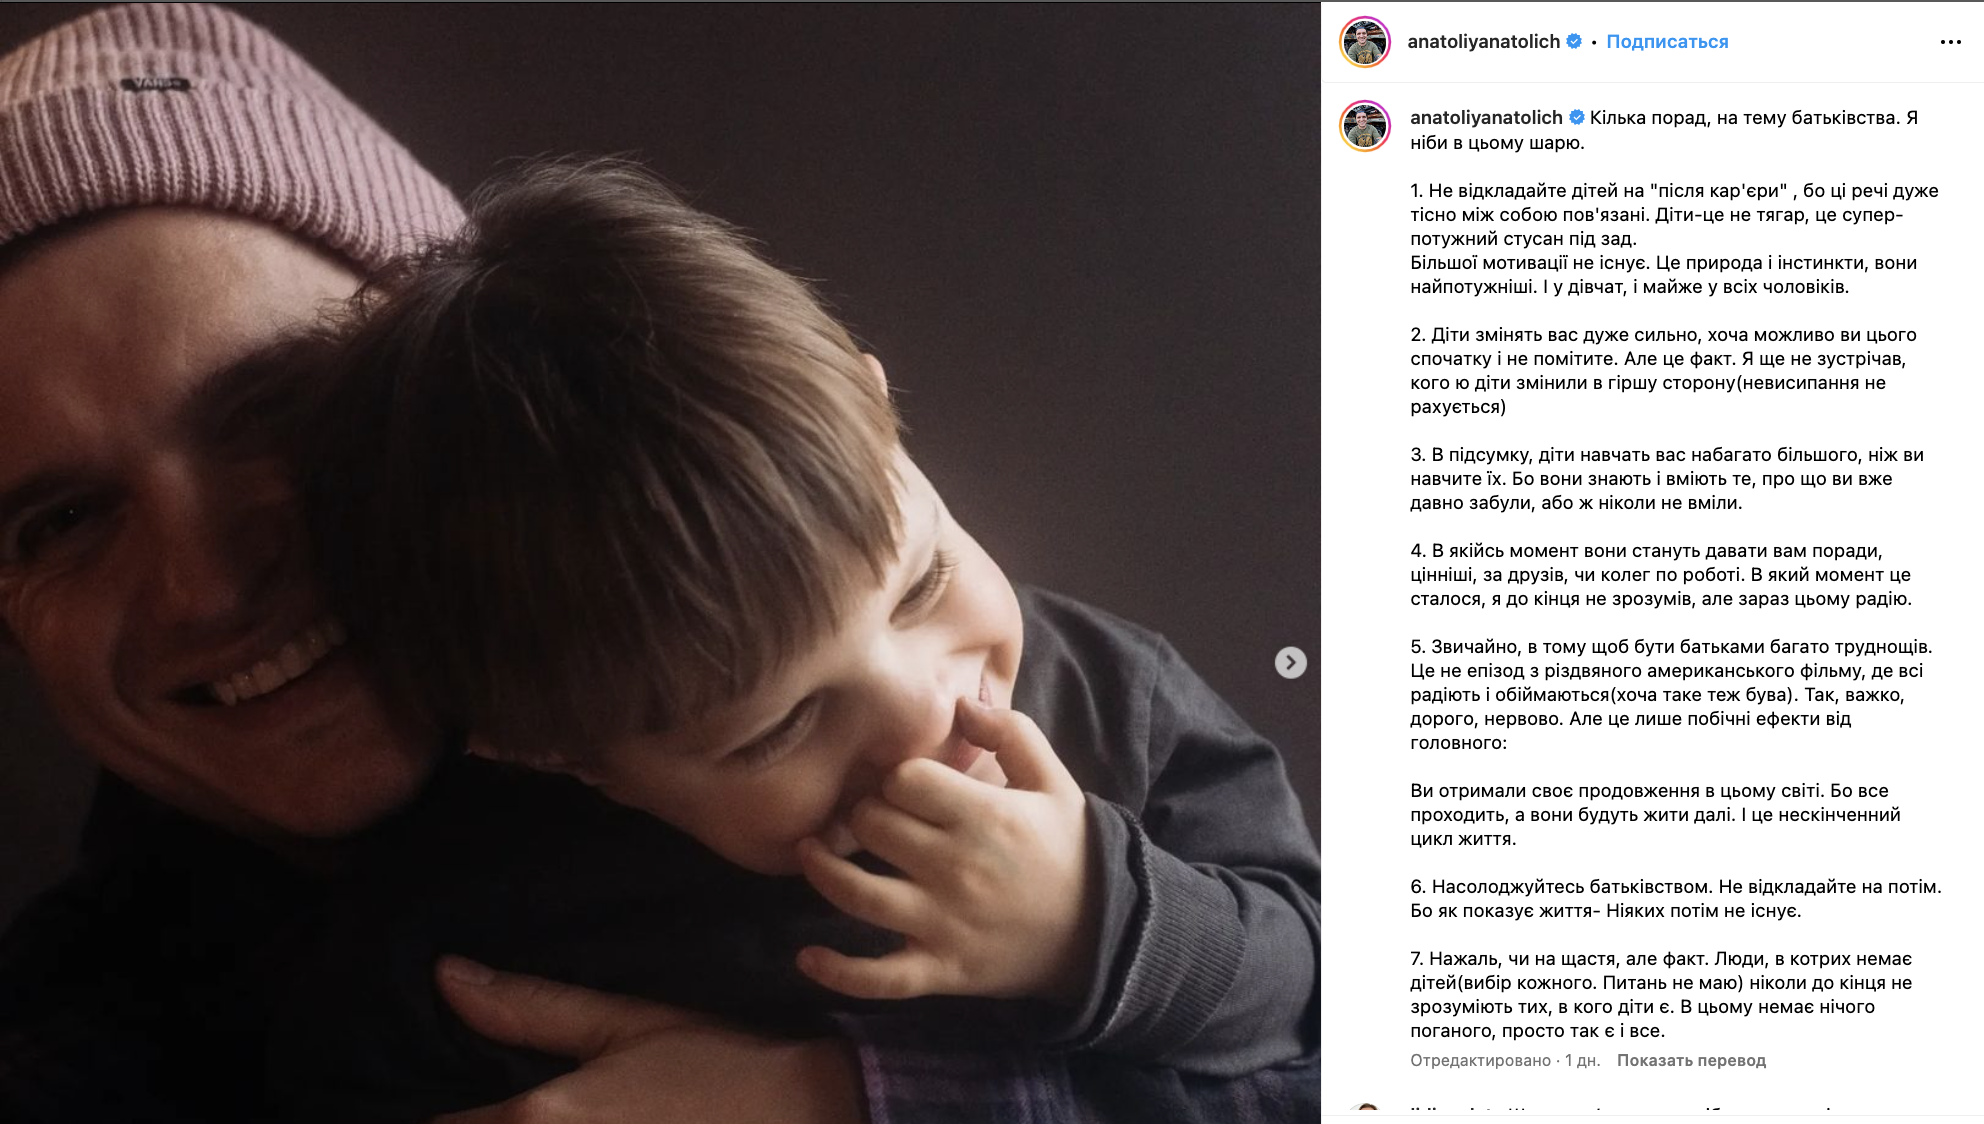 Не відкладайте дітей на "після кар'єри": Анатолій Анатоліч дав поради батькам і захопив мережу